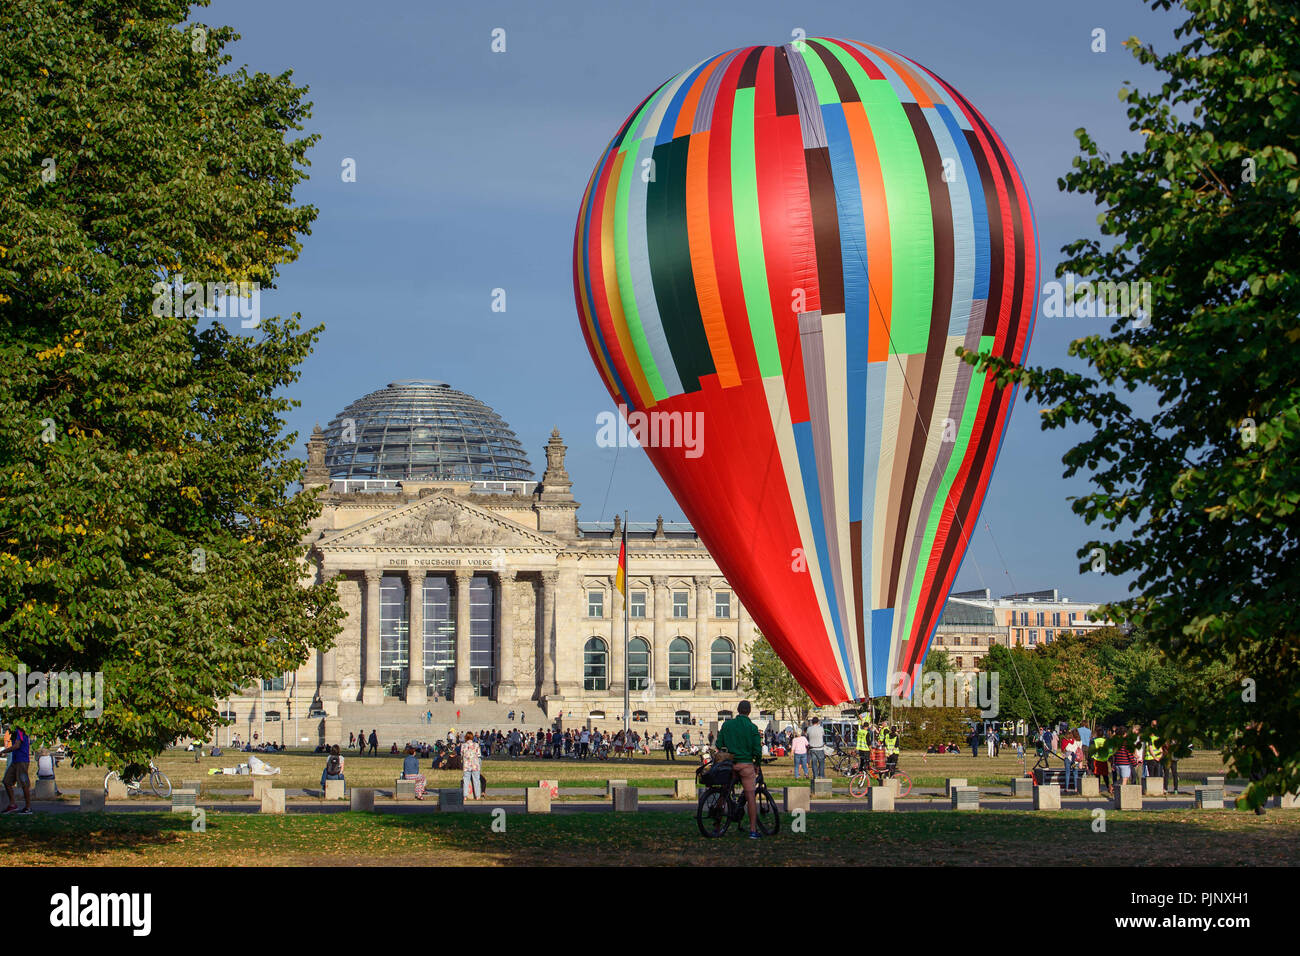 Hamburg, Deutschland. 08 Sep, 2018. Ein bunter Heißluftballon steht für  eine Werbekampagne für den Film "Ballon" vor dem Reichstag. Der Film ist  über eine Flucht aus der DDR in einem Heißluft-Ballon in